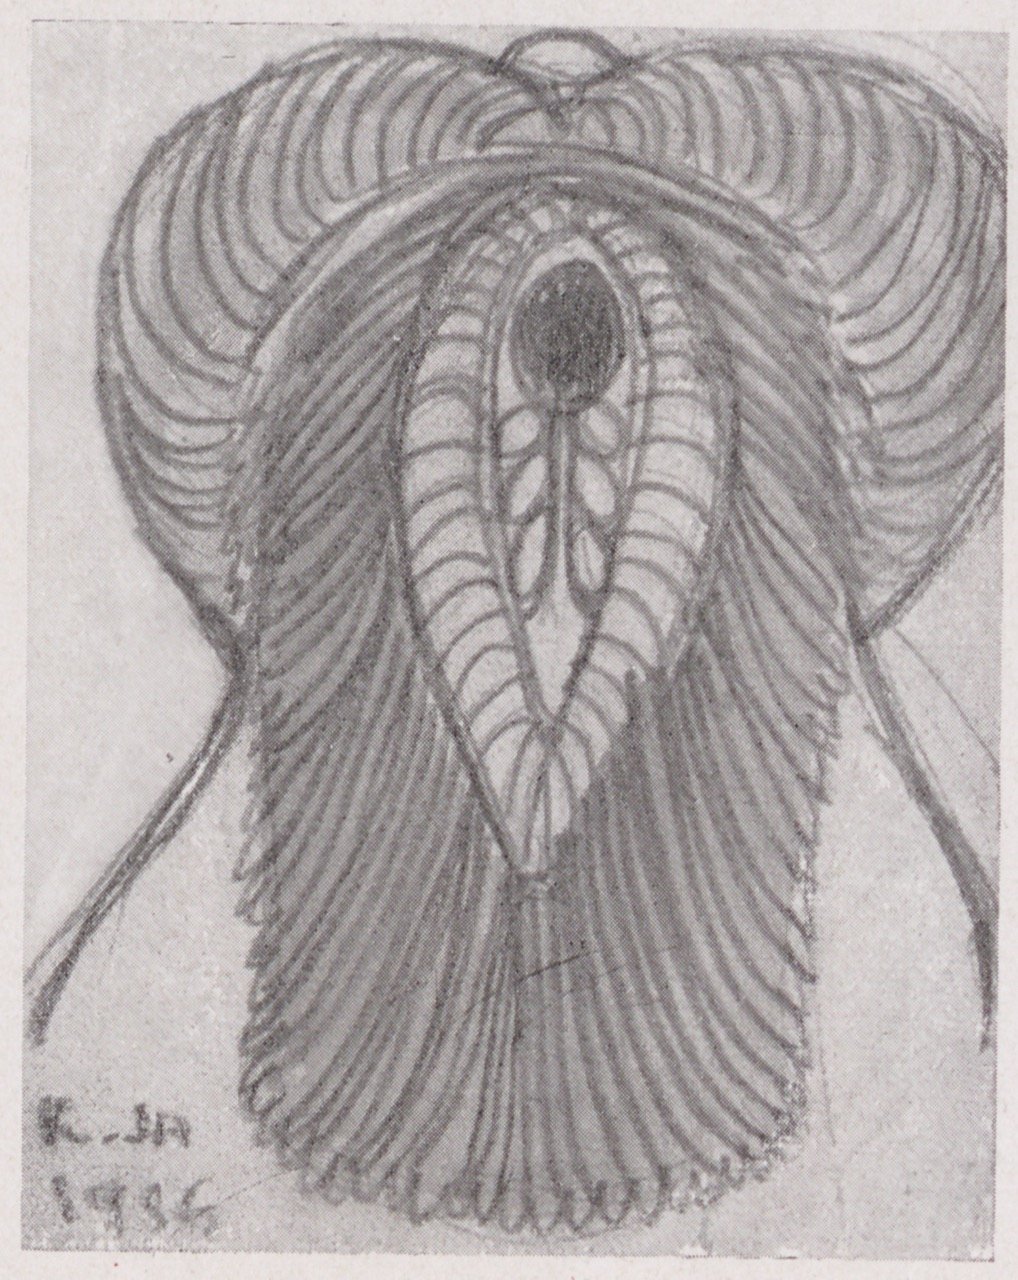 Fotografie einer Zeichnung eines erotisches Ornaments (Magnus-Hirschfeld-Gesellschaft Public Domain Mark)